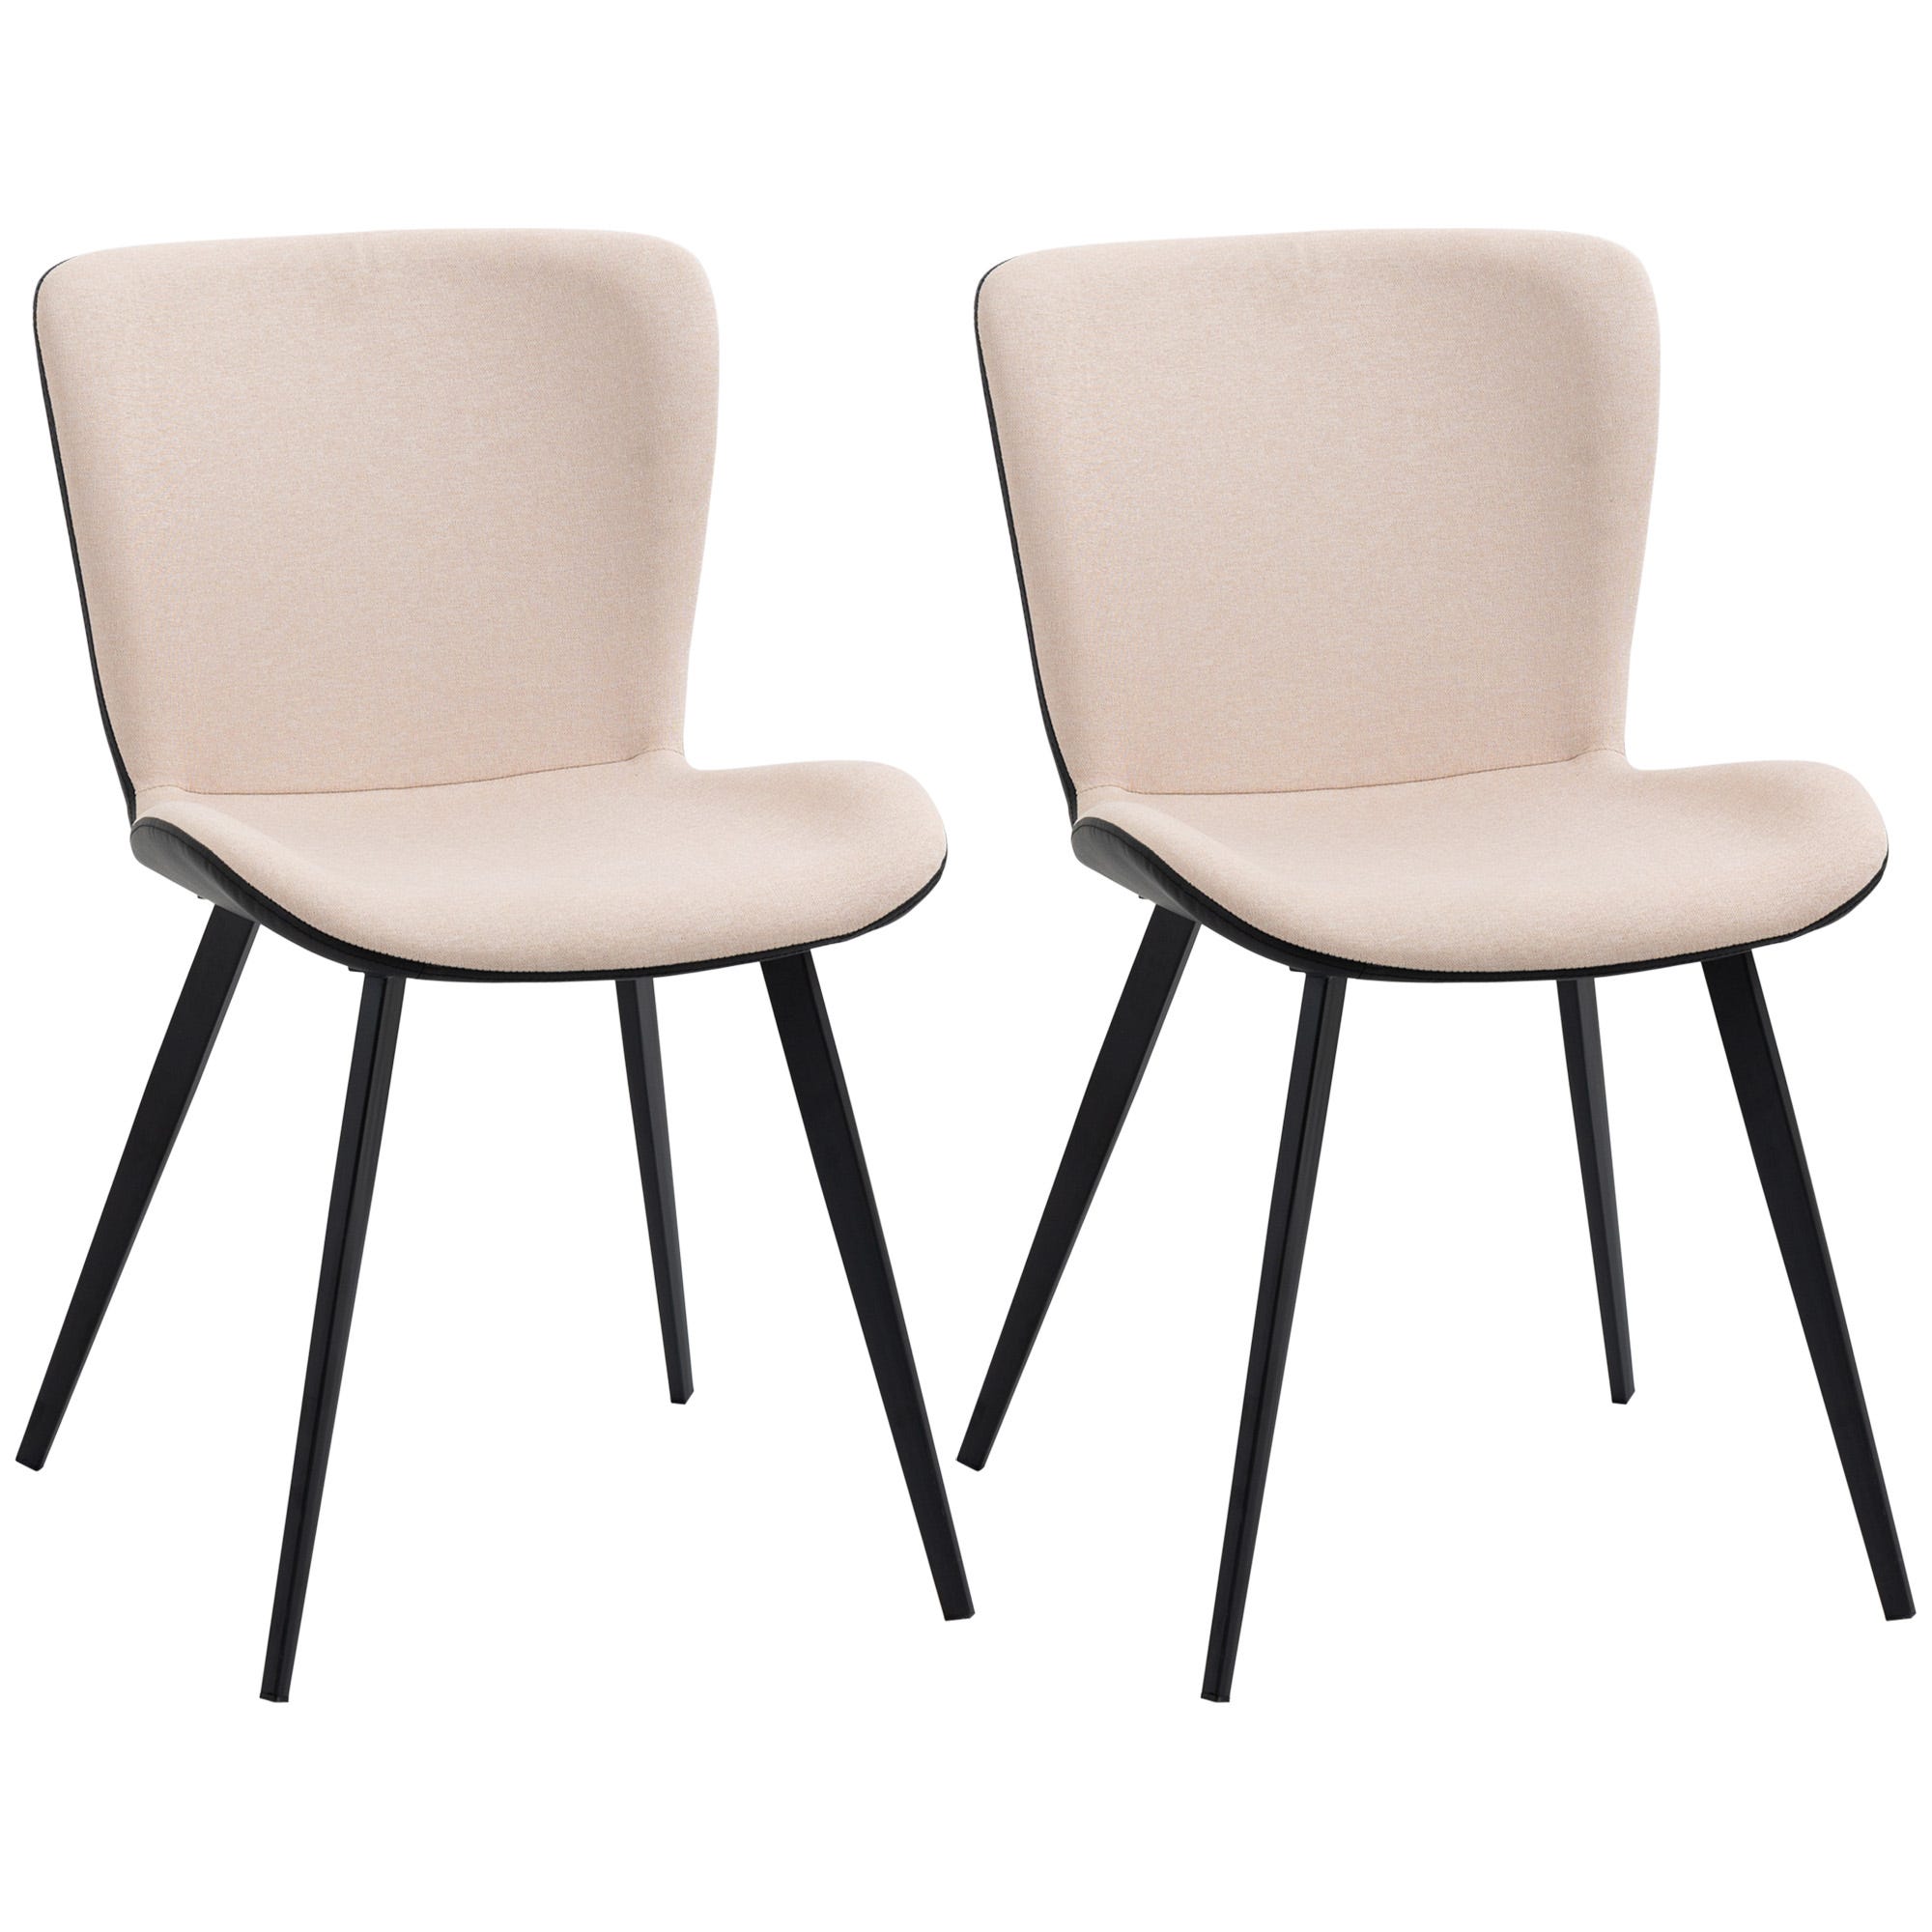 Conjunto de 2 sillas de comedor modernas HOMCOM 47,5x58x79,5 cm rosa